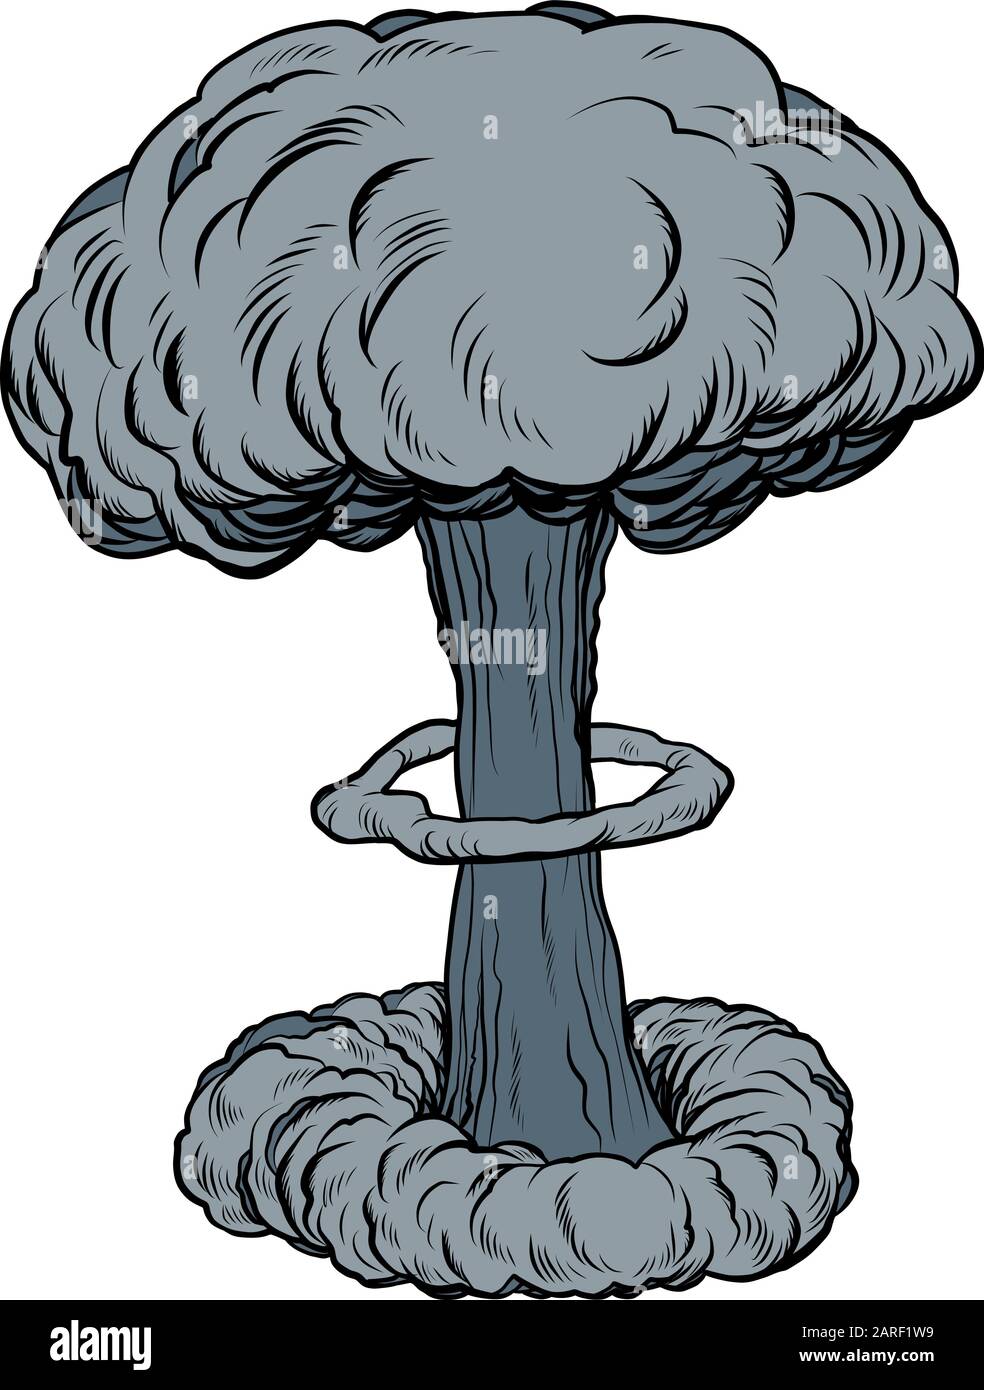 Esplosione atomica nucleare nucleare Illustrazione Vettoriale